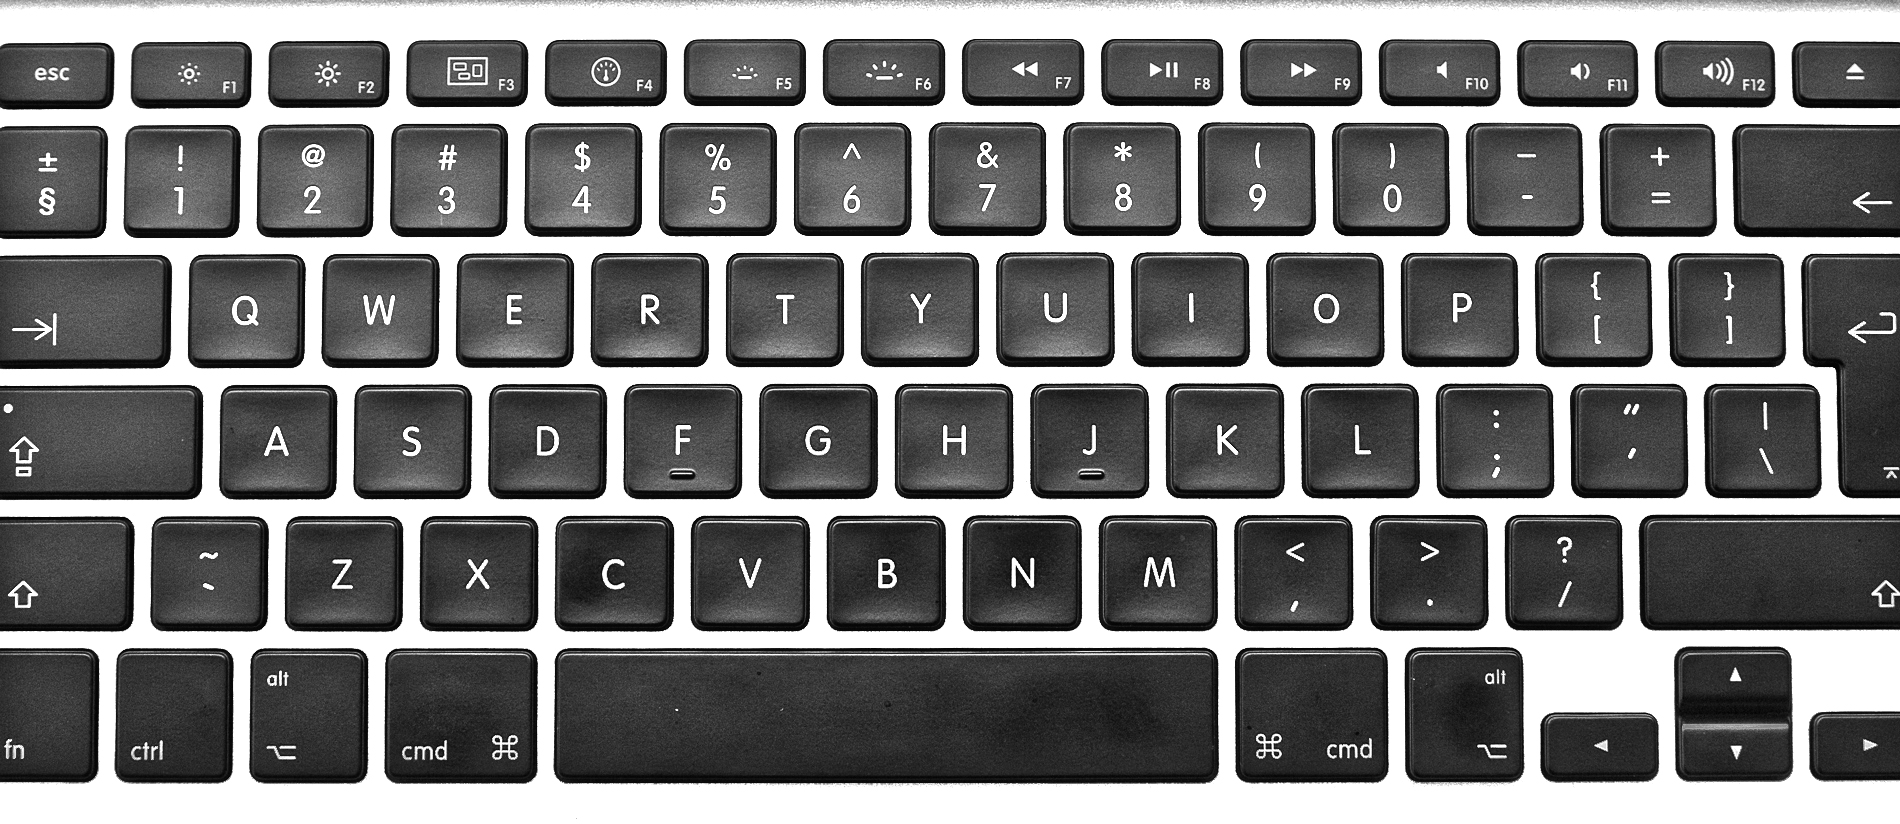 mac keyboard clipart - photo #21